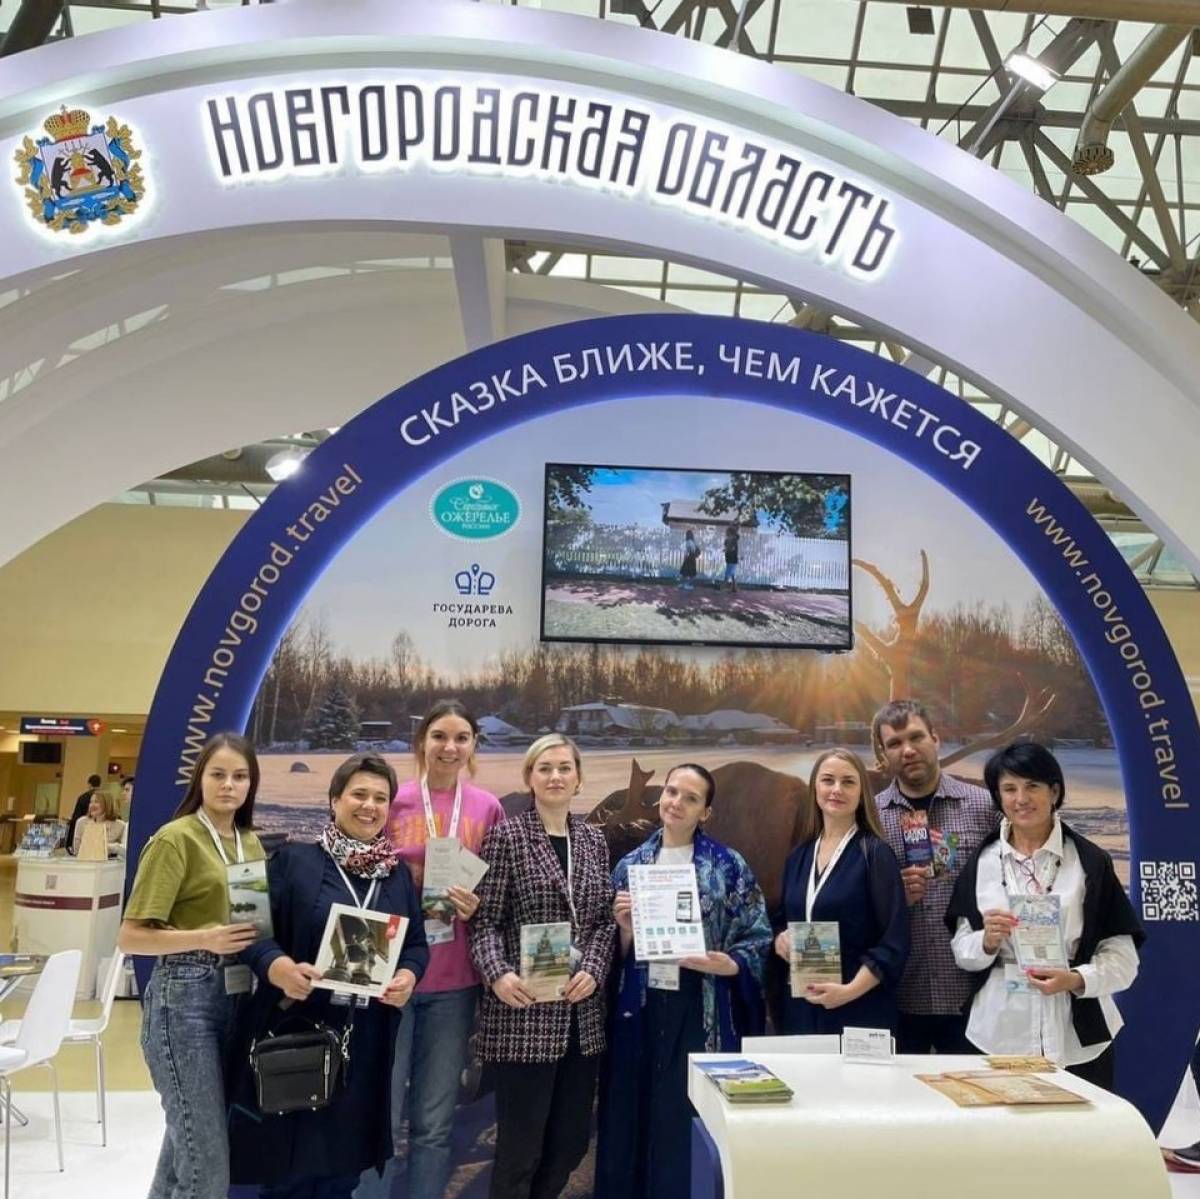 Посетители выставки узнали о преимуществах отдыха на Новгородчине, туристских локациях, перспективах развития инфраструктуры в регионе